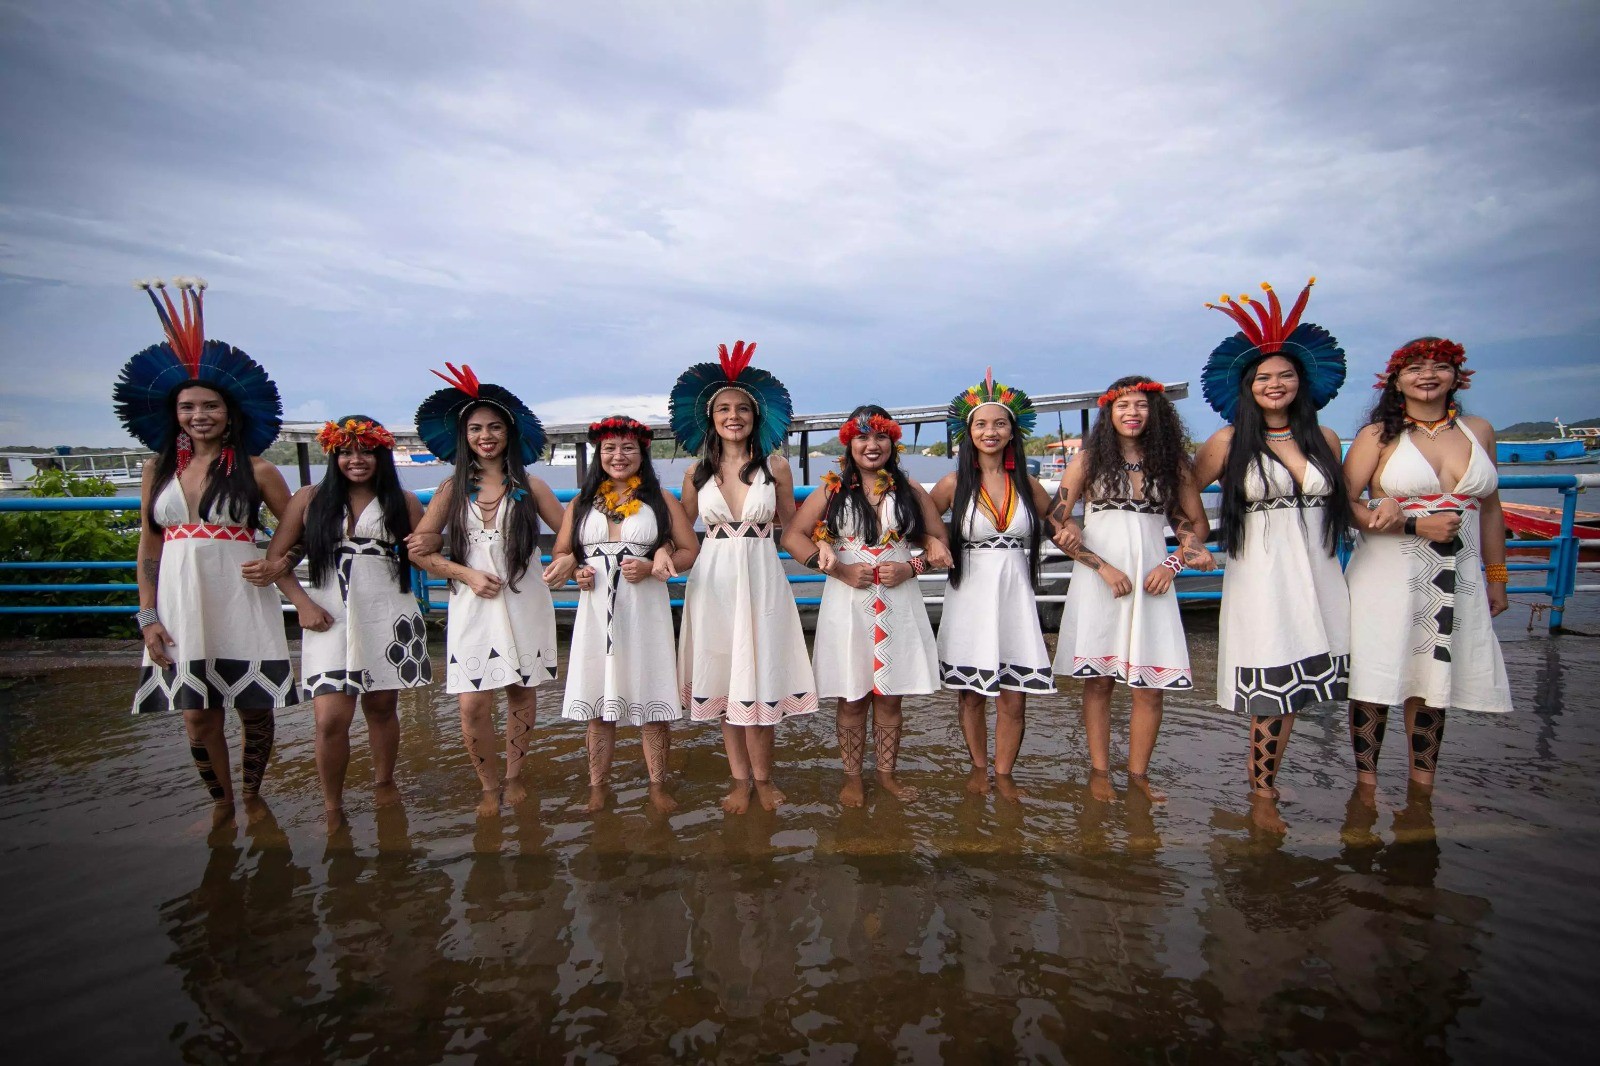 Arte da resistência: cantoras indígenas falam sobre luta por reconhecimento e visibilidade